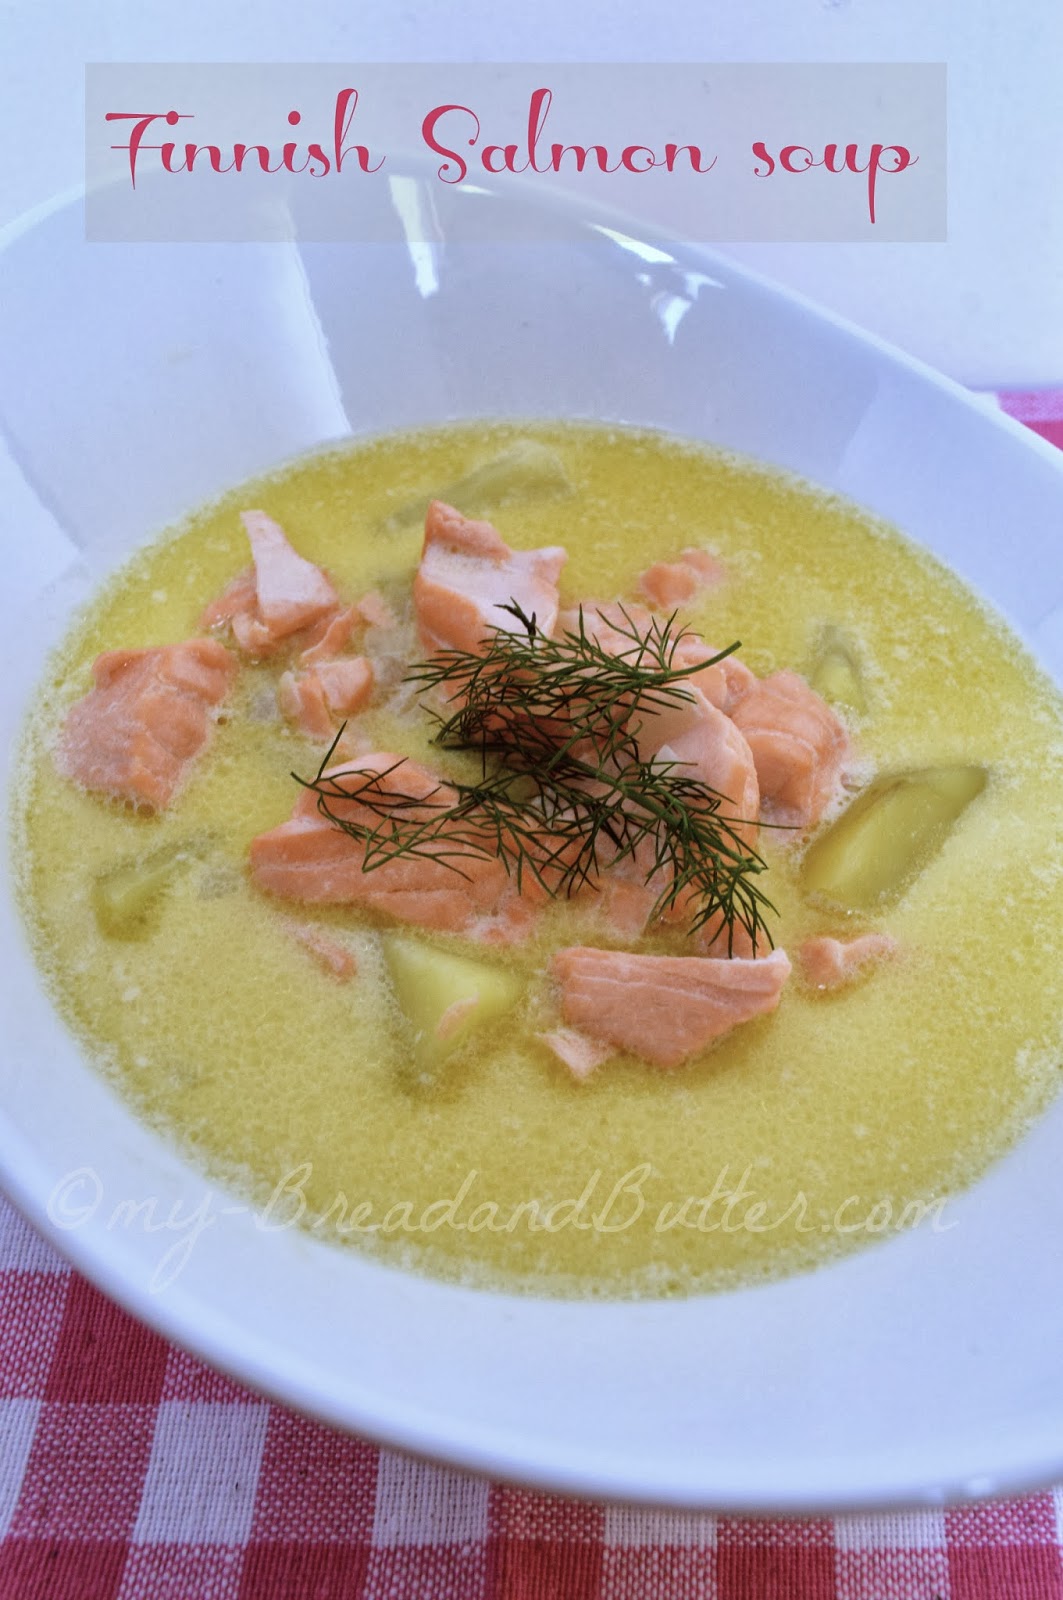 zuppa di salmone finlandese